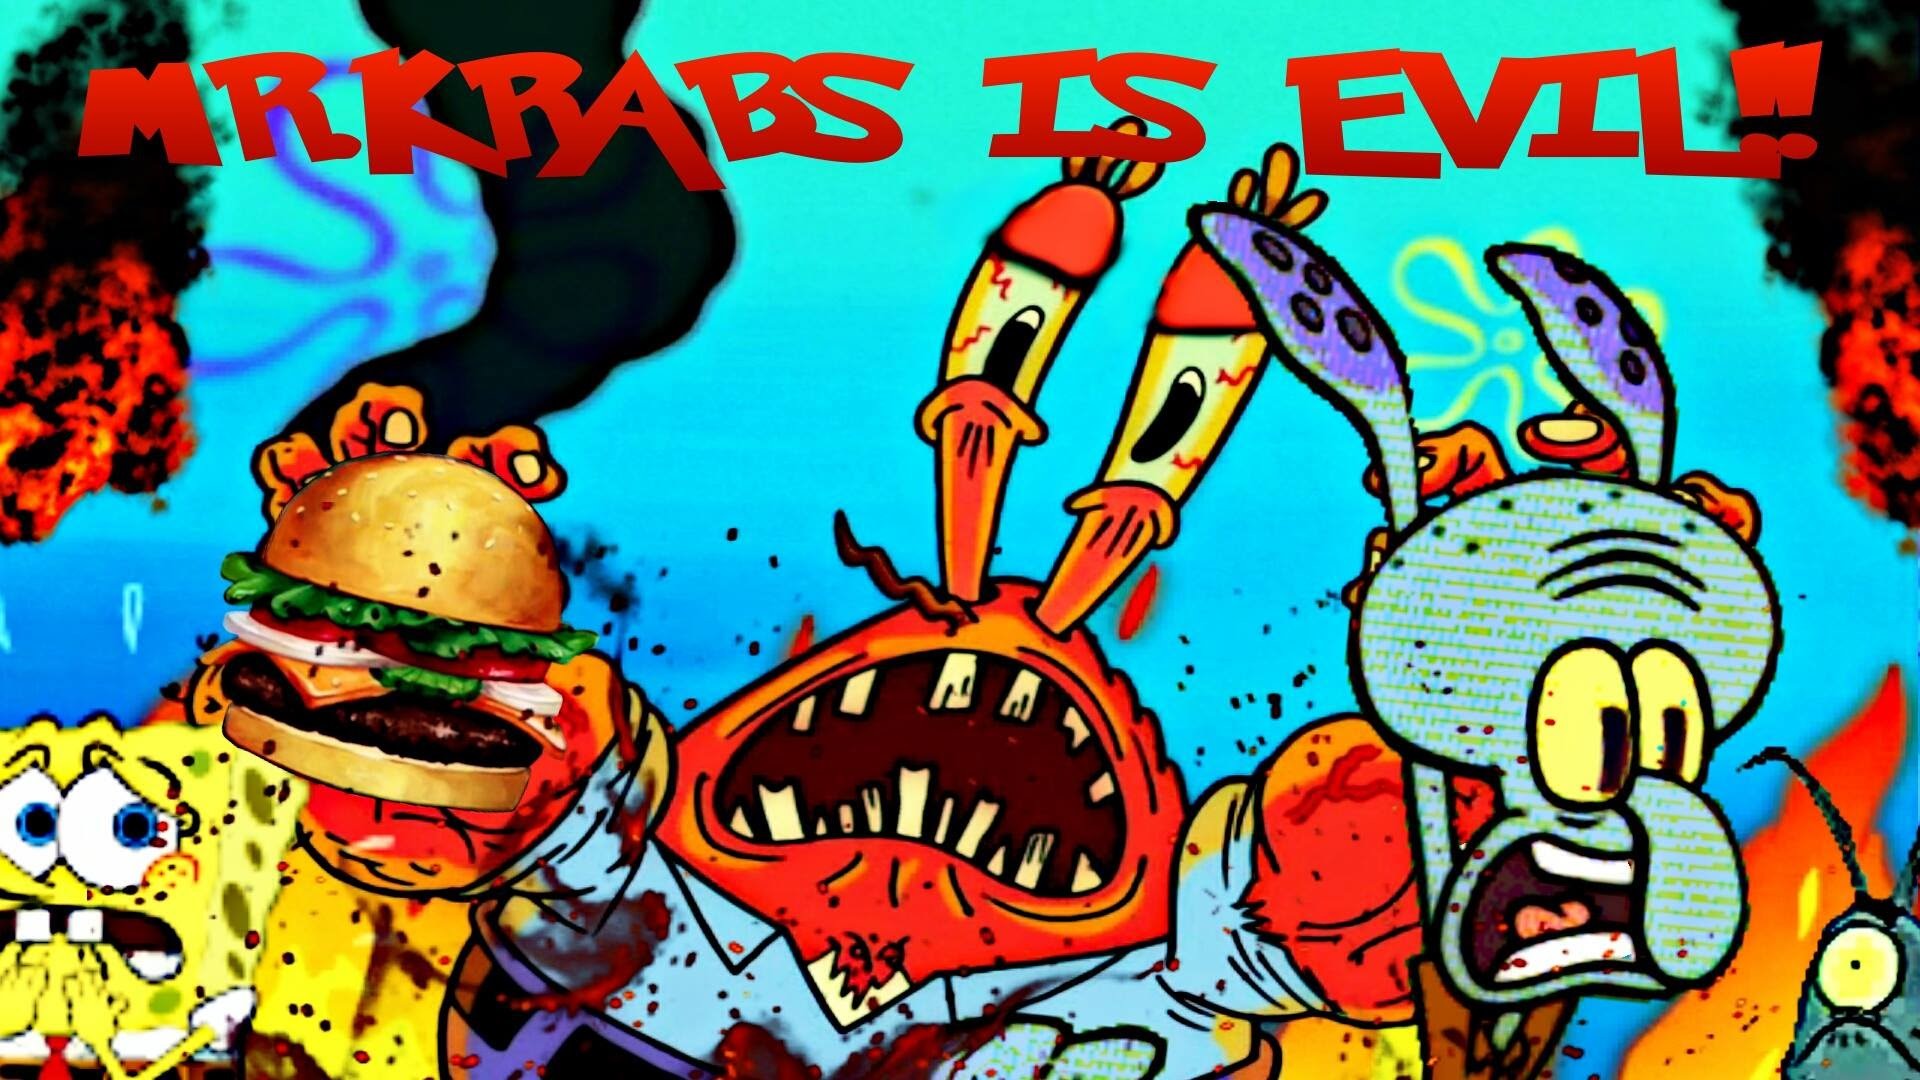 1920x1080 Mr.Krabs is evil